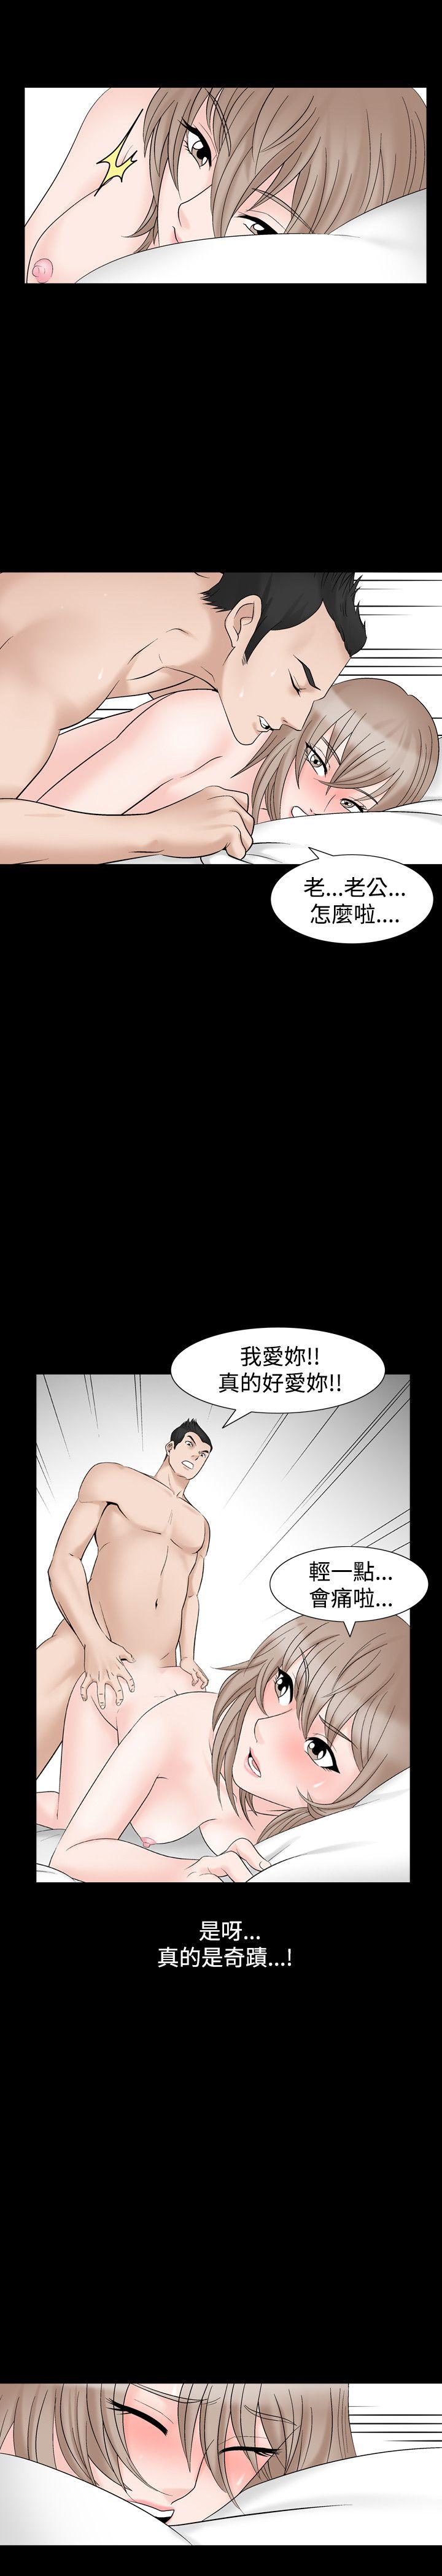 韩国污漫画 人妻性解放（全集） 第2季第1话 24